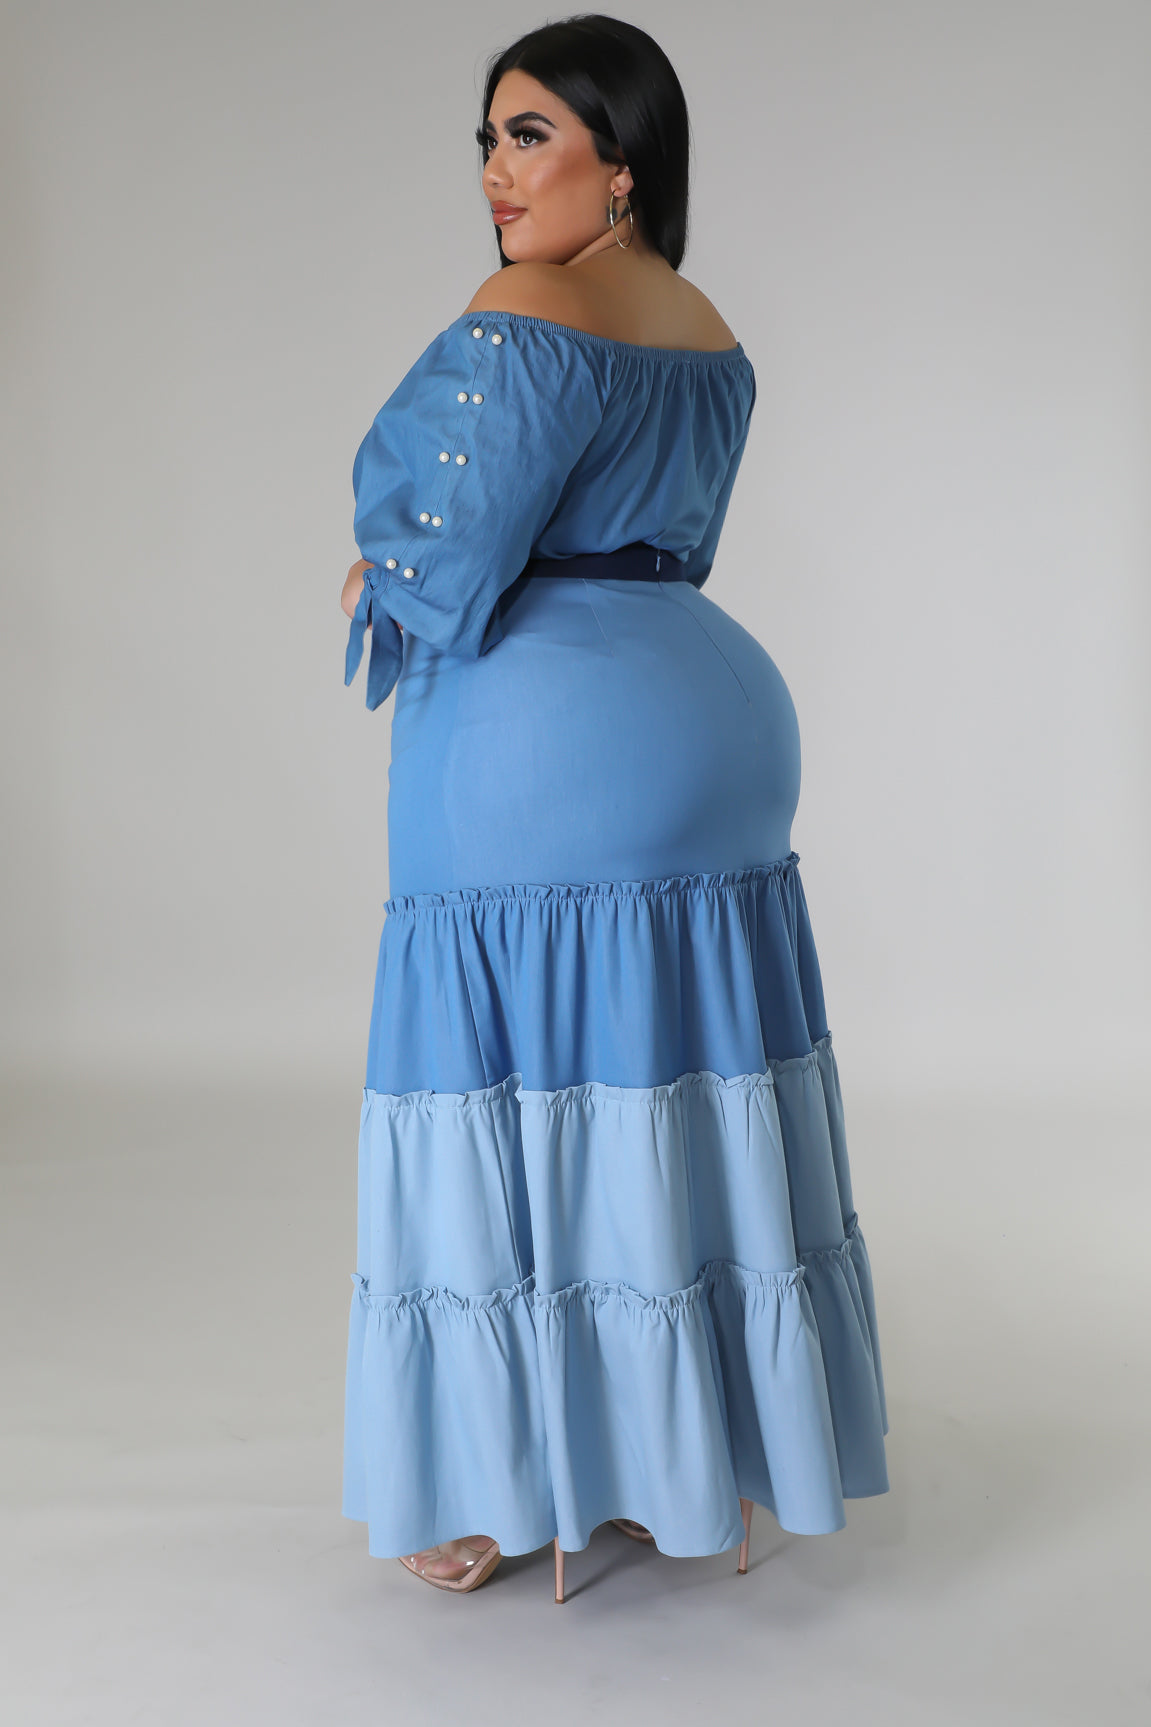 Theodora Skirt (Skirt Only)